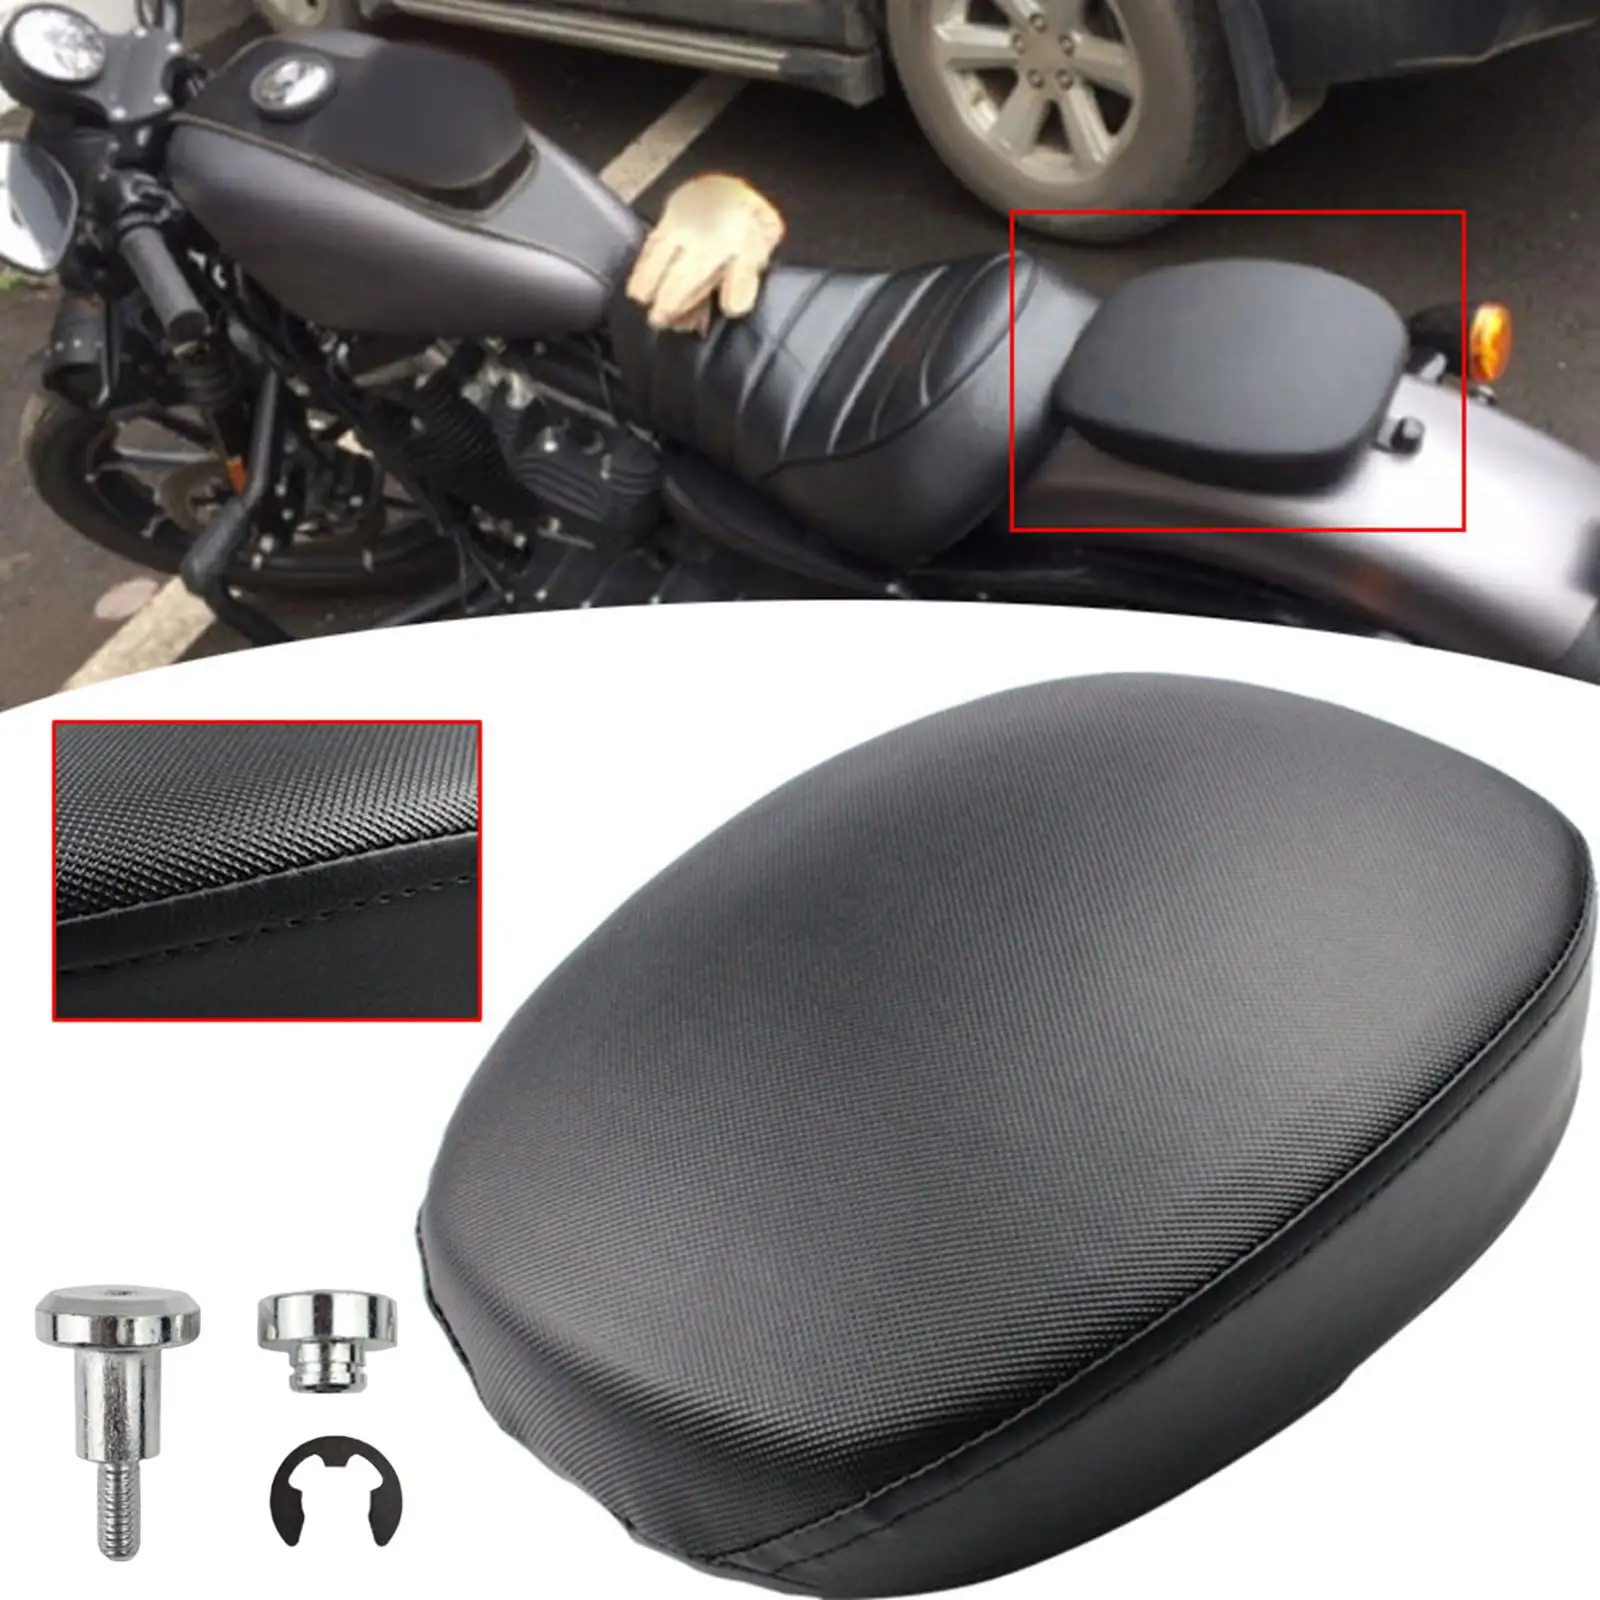 Motorcycle Rear Passenger Seat Pillion Pad PU Leather Waterproof Seat Cushion